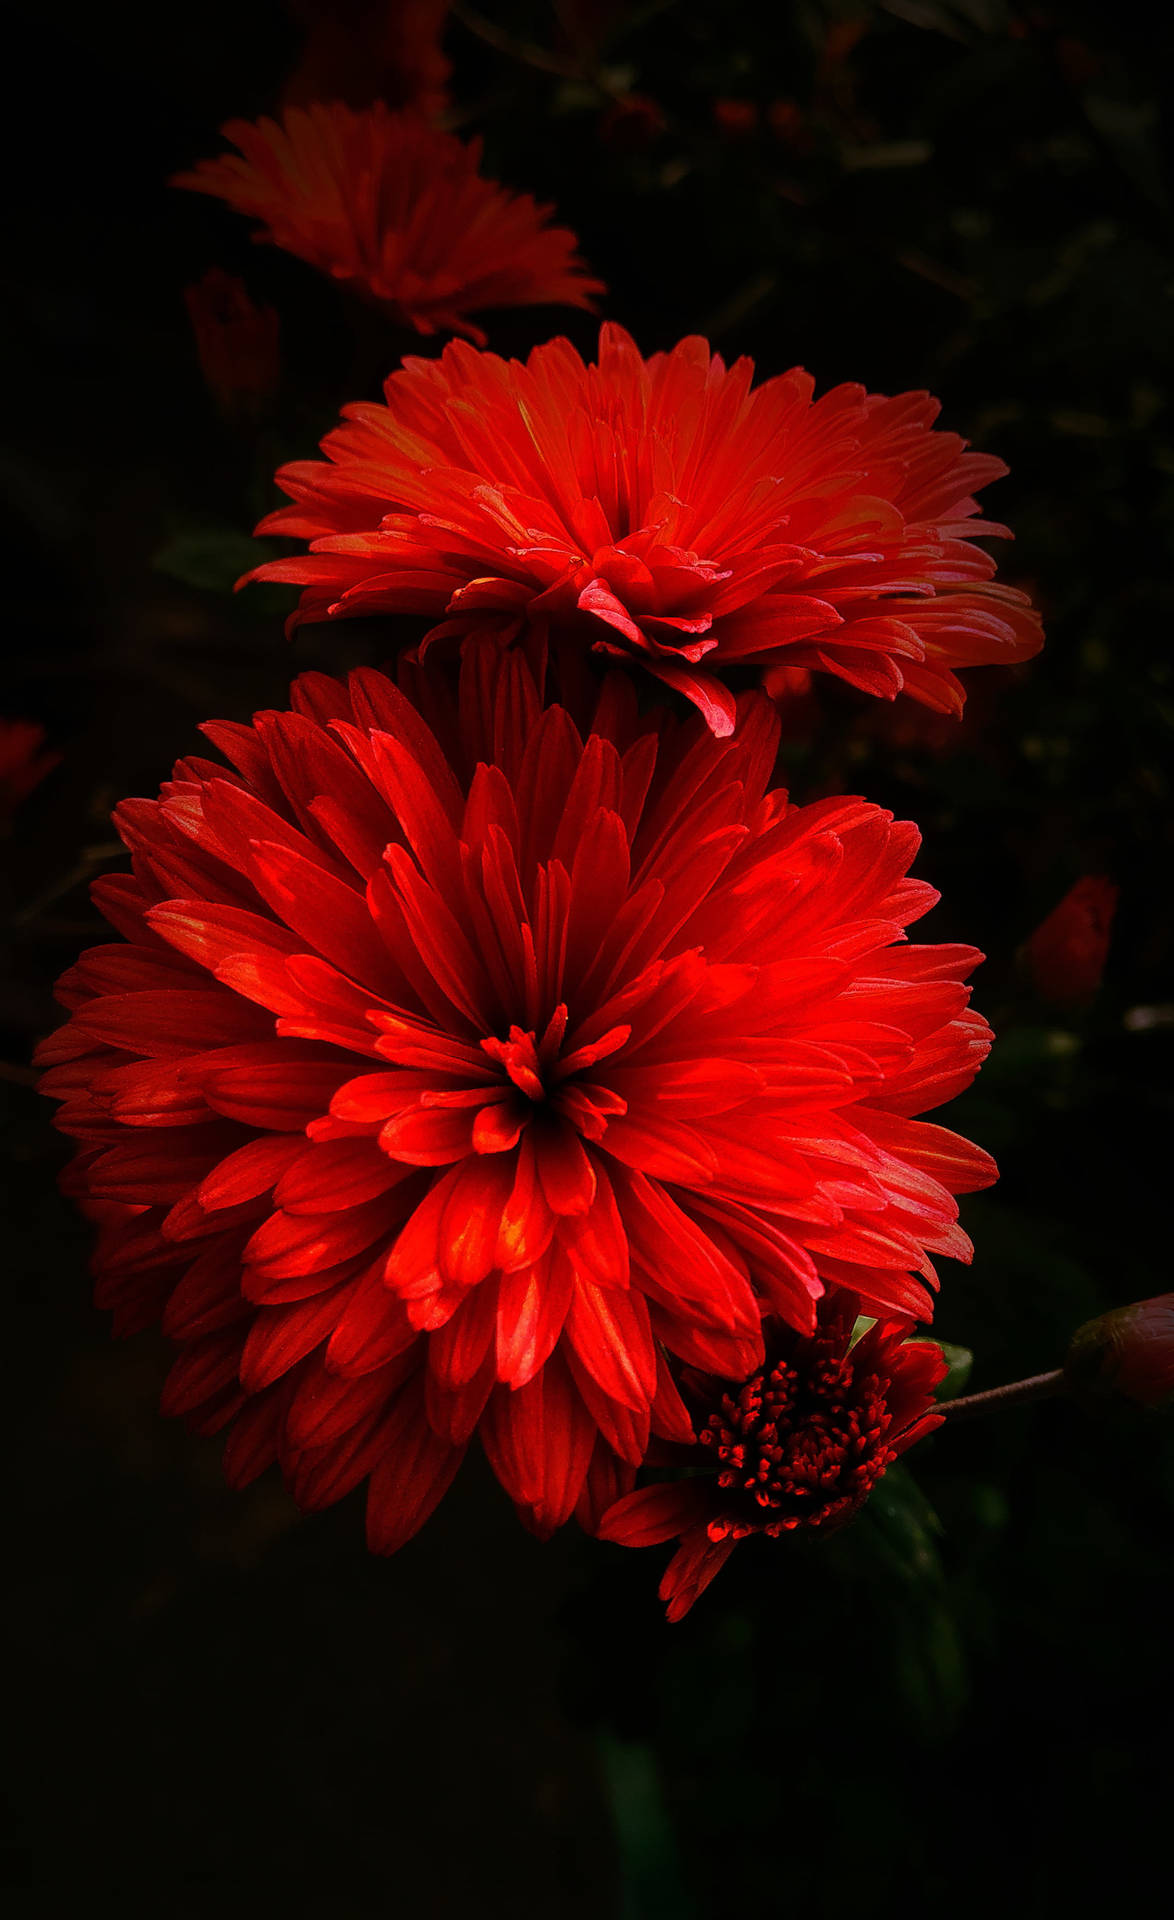 Exquisite Red Dahlia Flowers